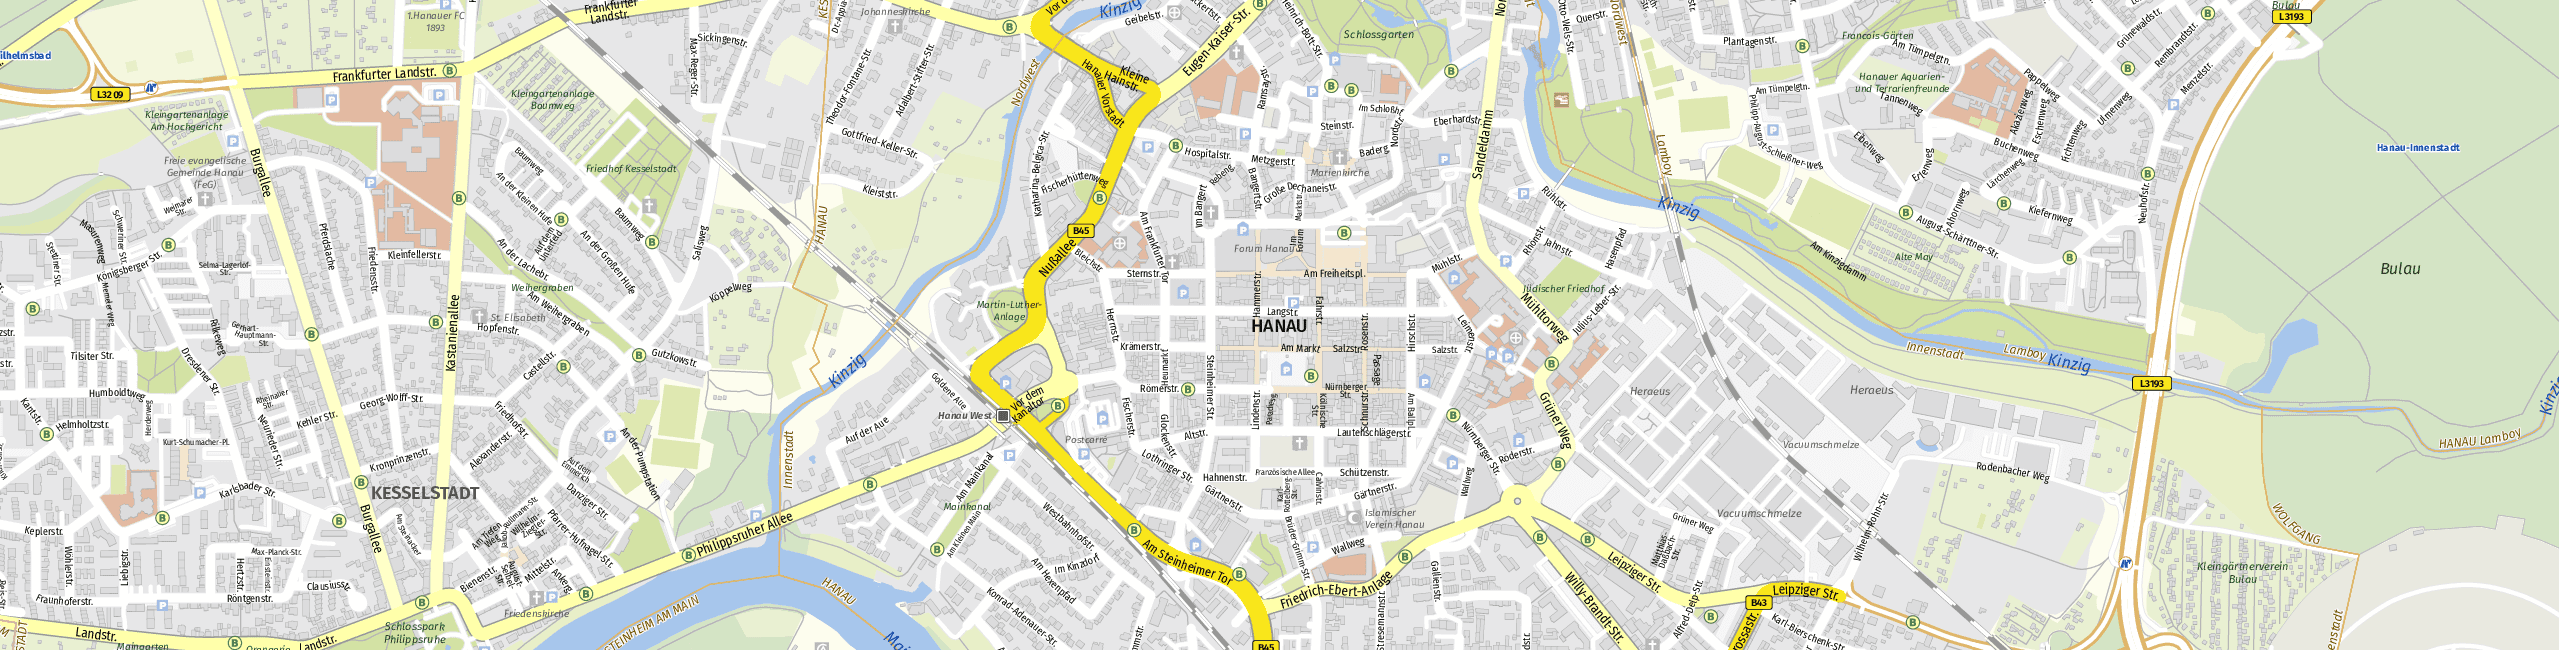 Stadtplan Hanau zum Downloaden.